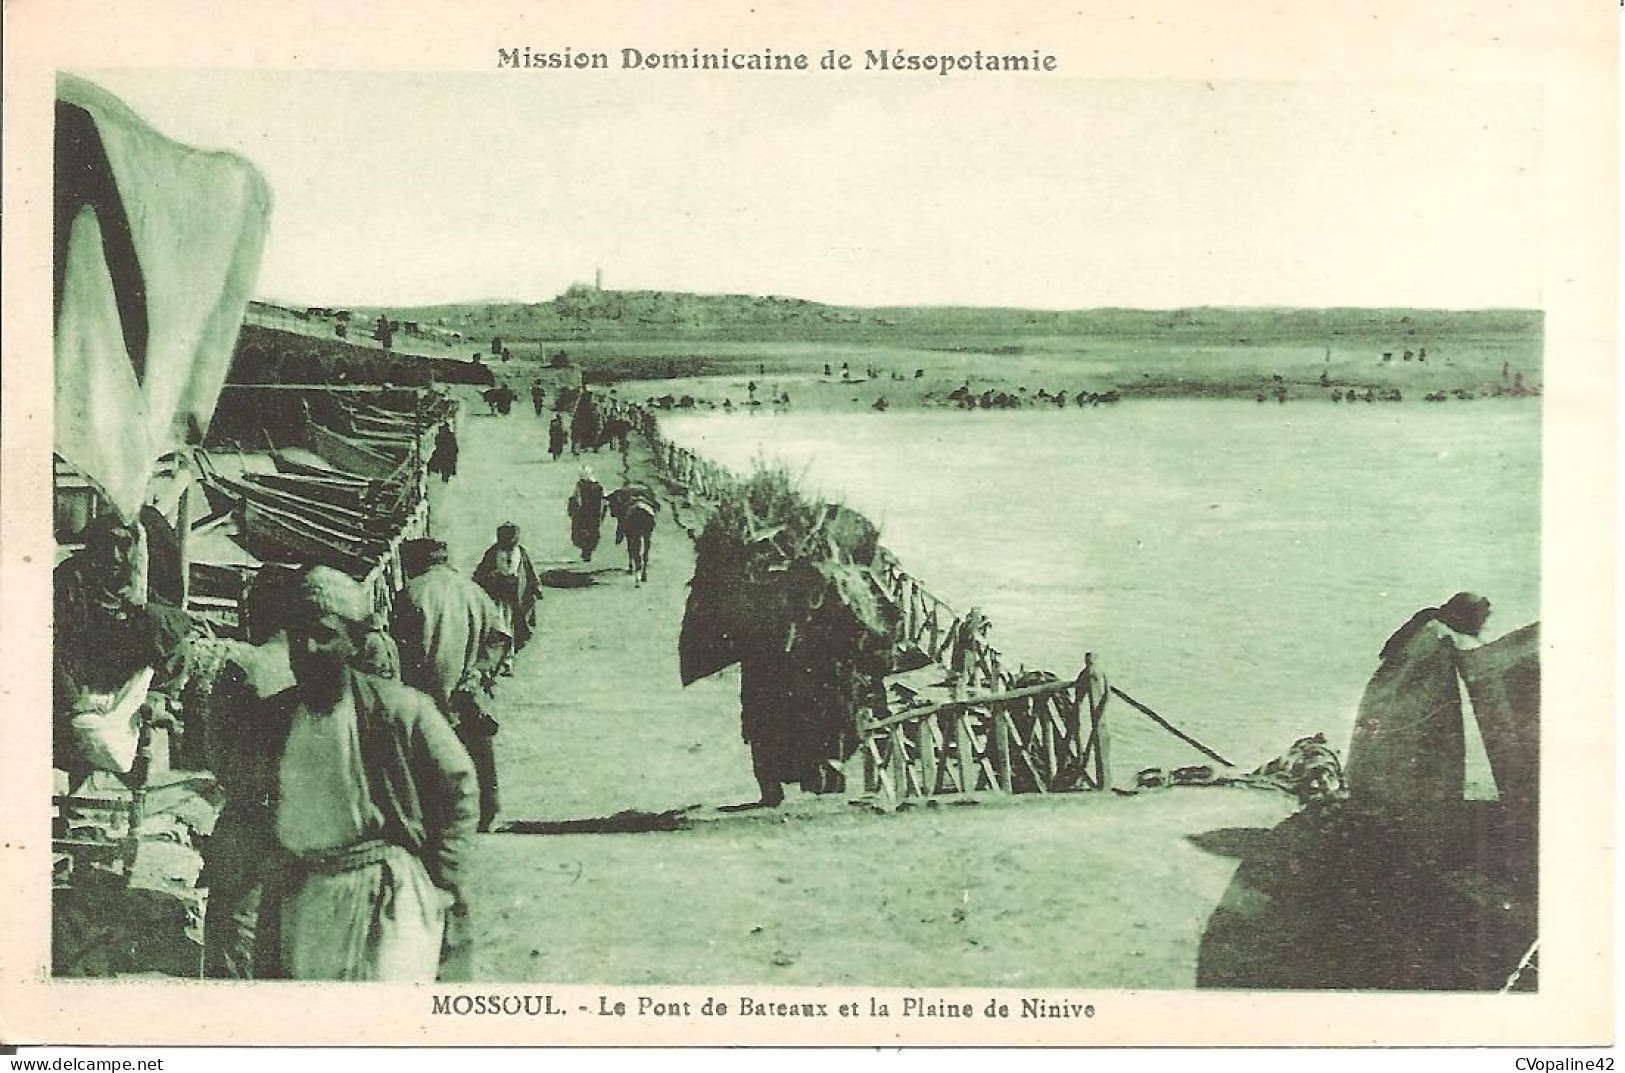 MOSSOUL (IRAQ) Le Pont De Bateaux Et La Plaine De Ninive (MISSION DOMINICAINE DE MESOPOTAMIE) - Iraq